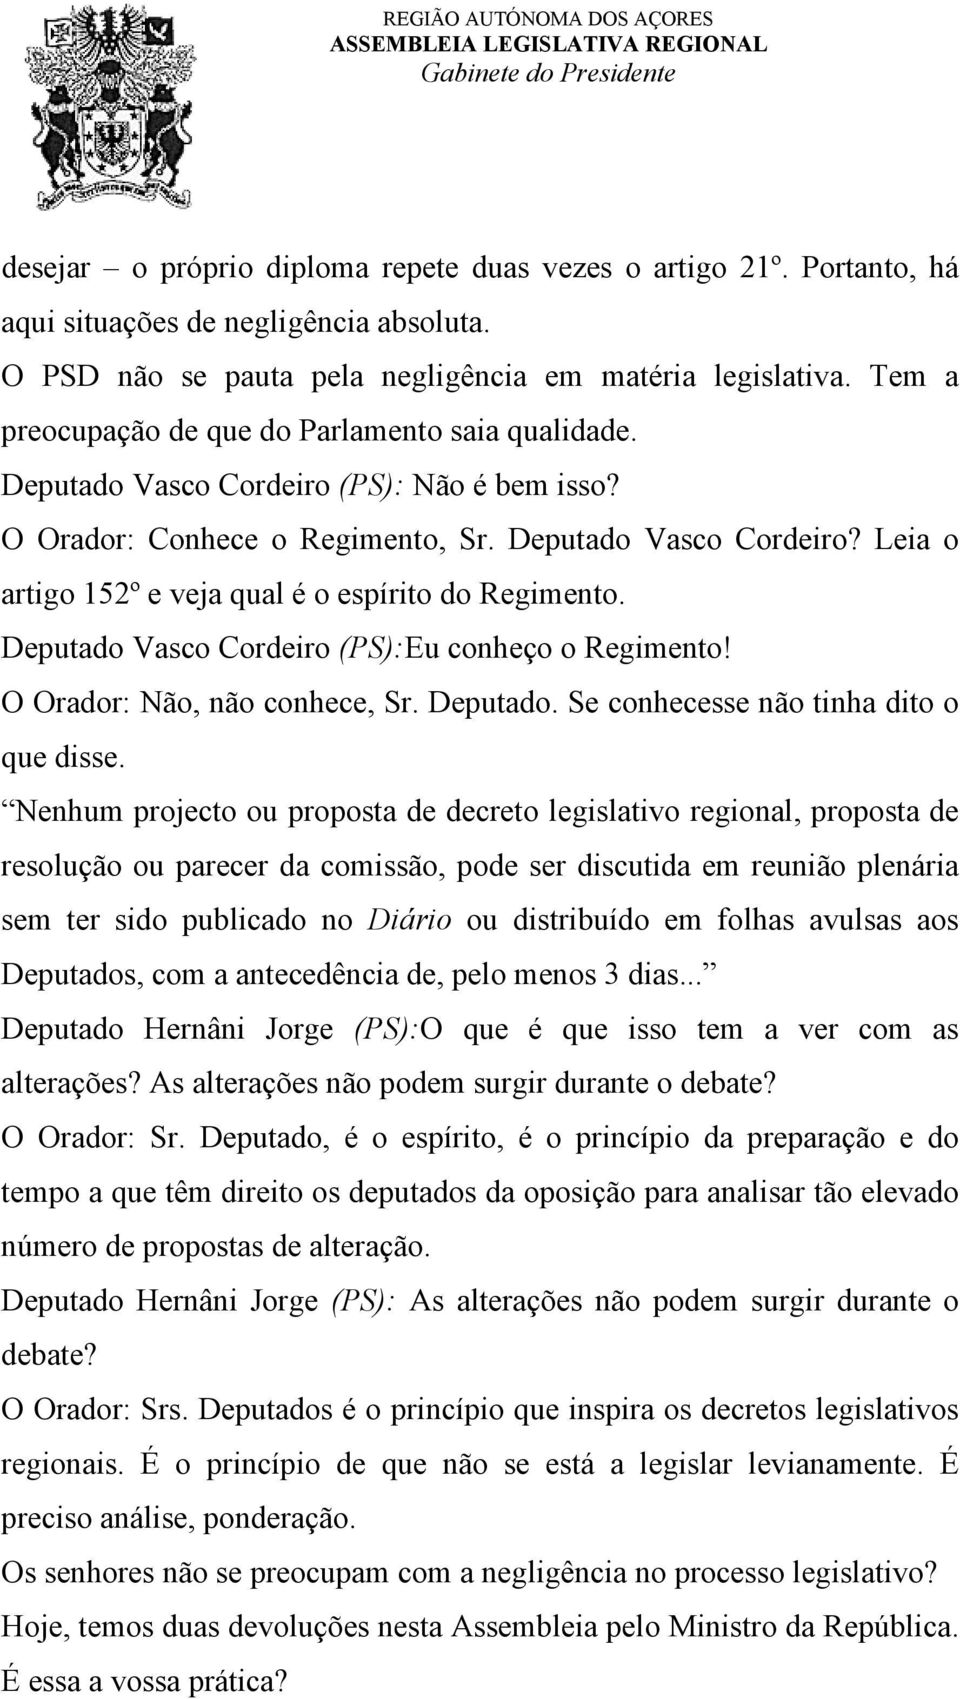 Deputado Vasco Cordeiro (PS):Eu conheço o Regimento! O Orador: Não, não conhece, Sr. Deputado. Se conhecesse não tinha dito o que disse.